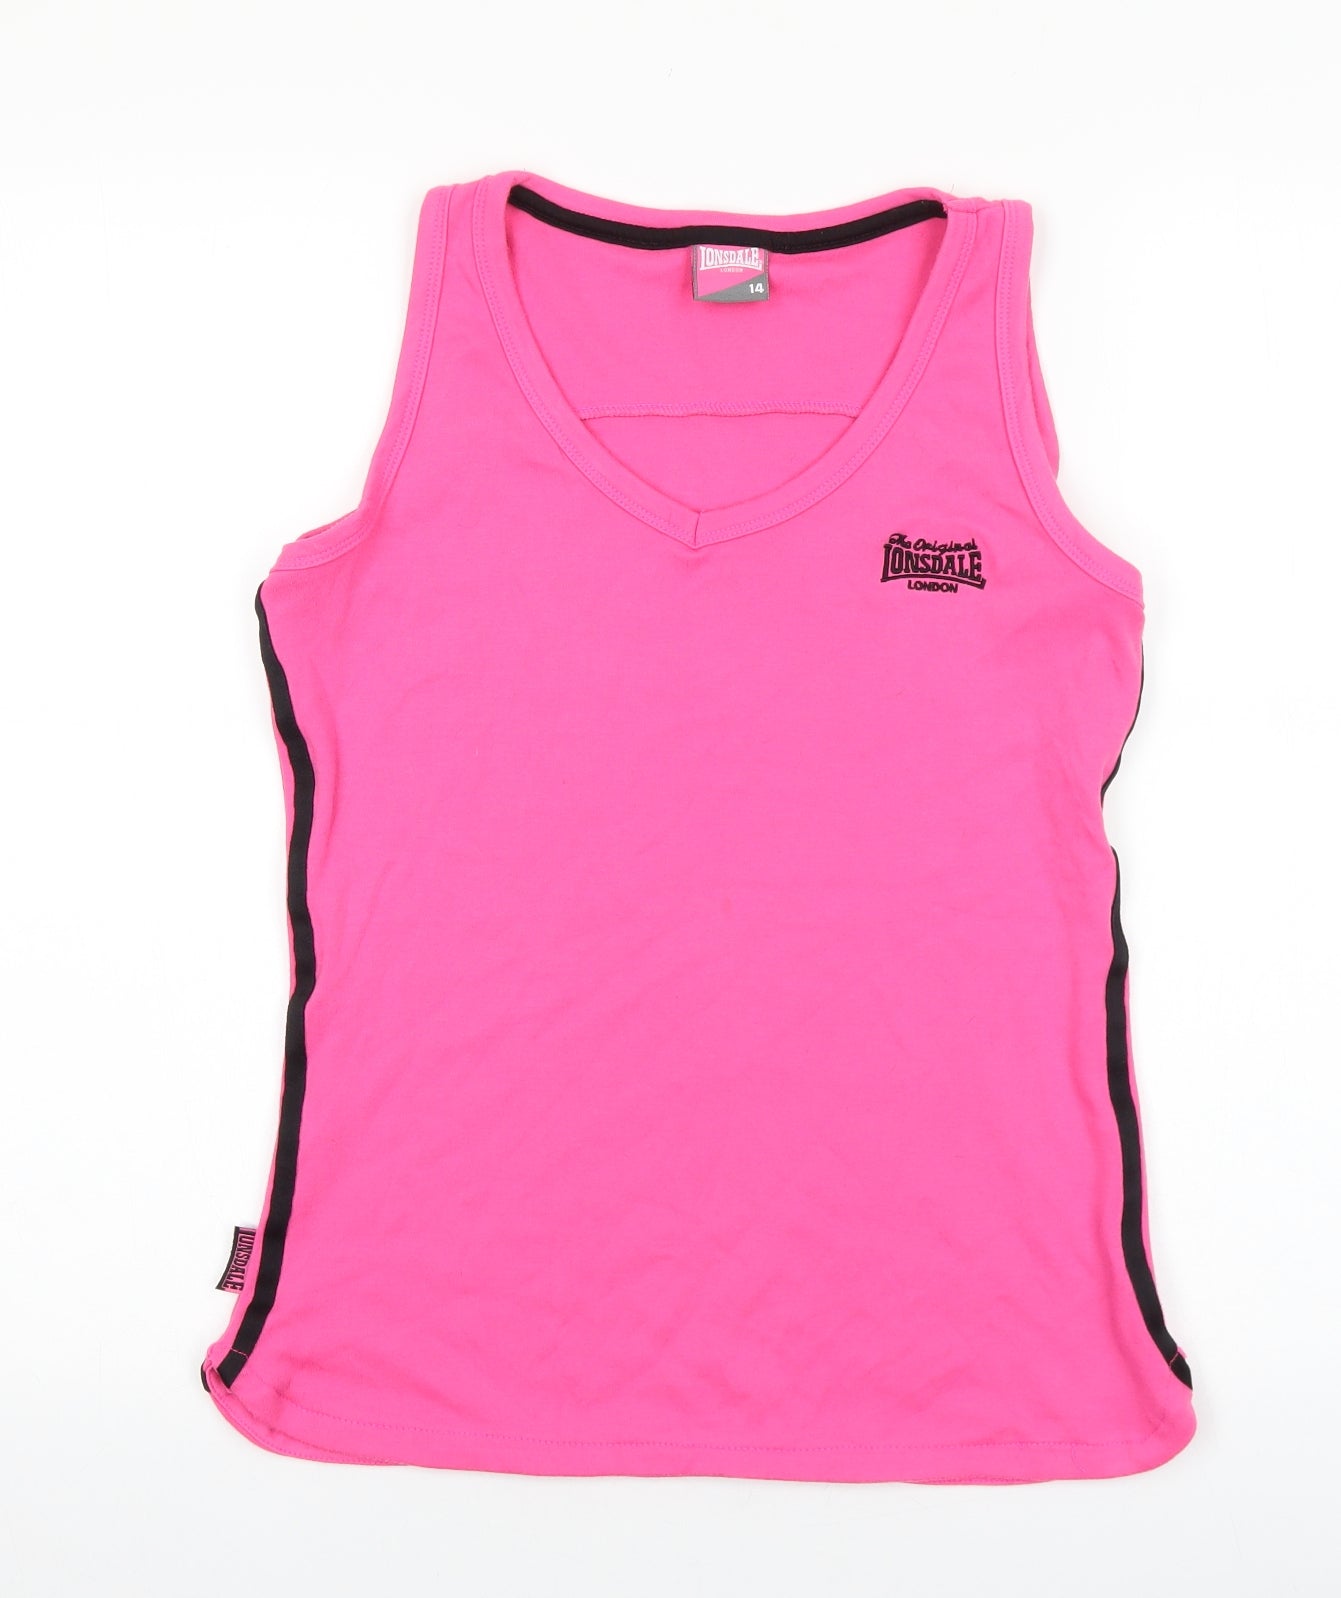 Lonsdale Womens Pink Polyester Basic Tank Size 14 V-Neck